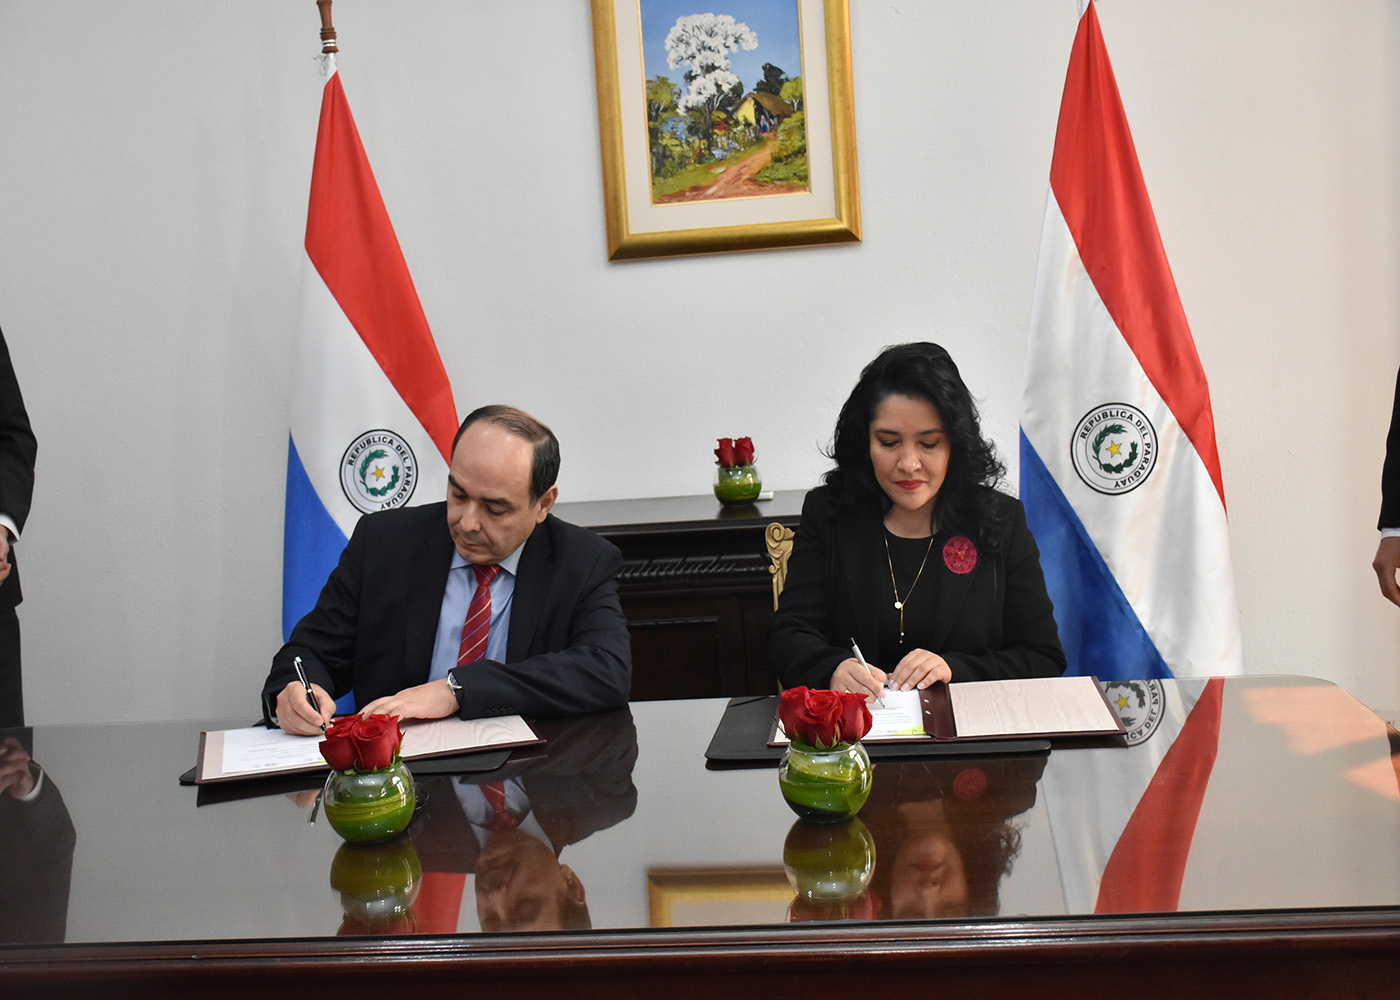 Cancillería y Senatur desarrollarán programas para fortalecer al Paraguay como destino turístico